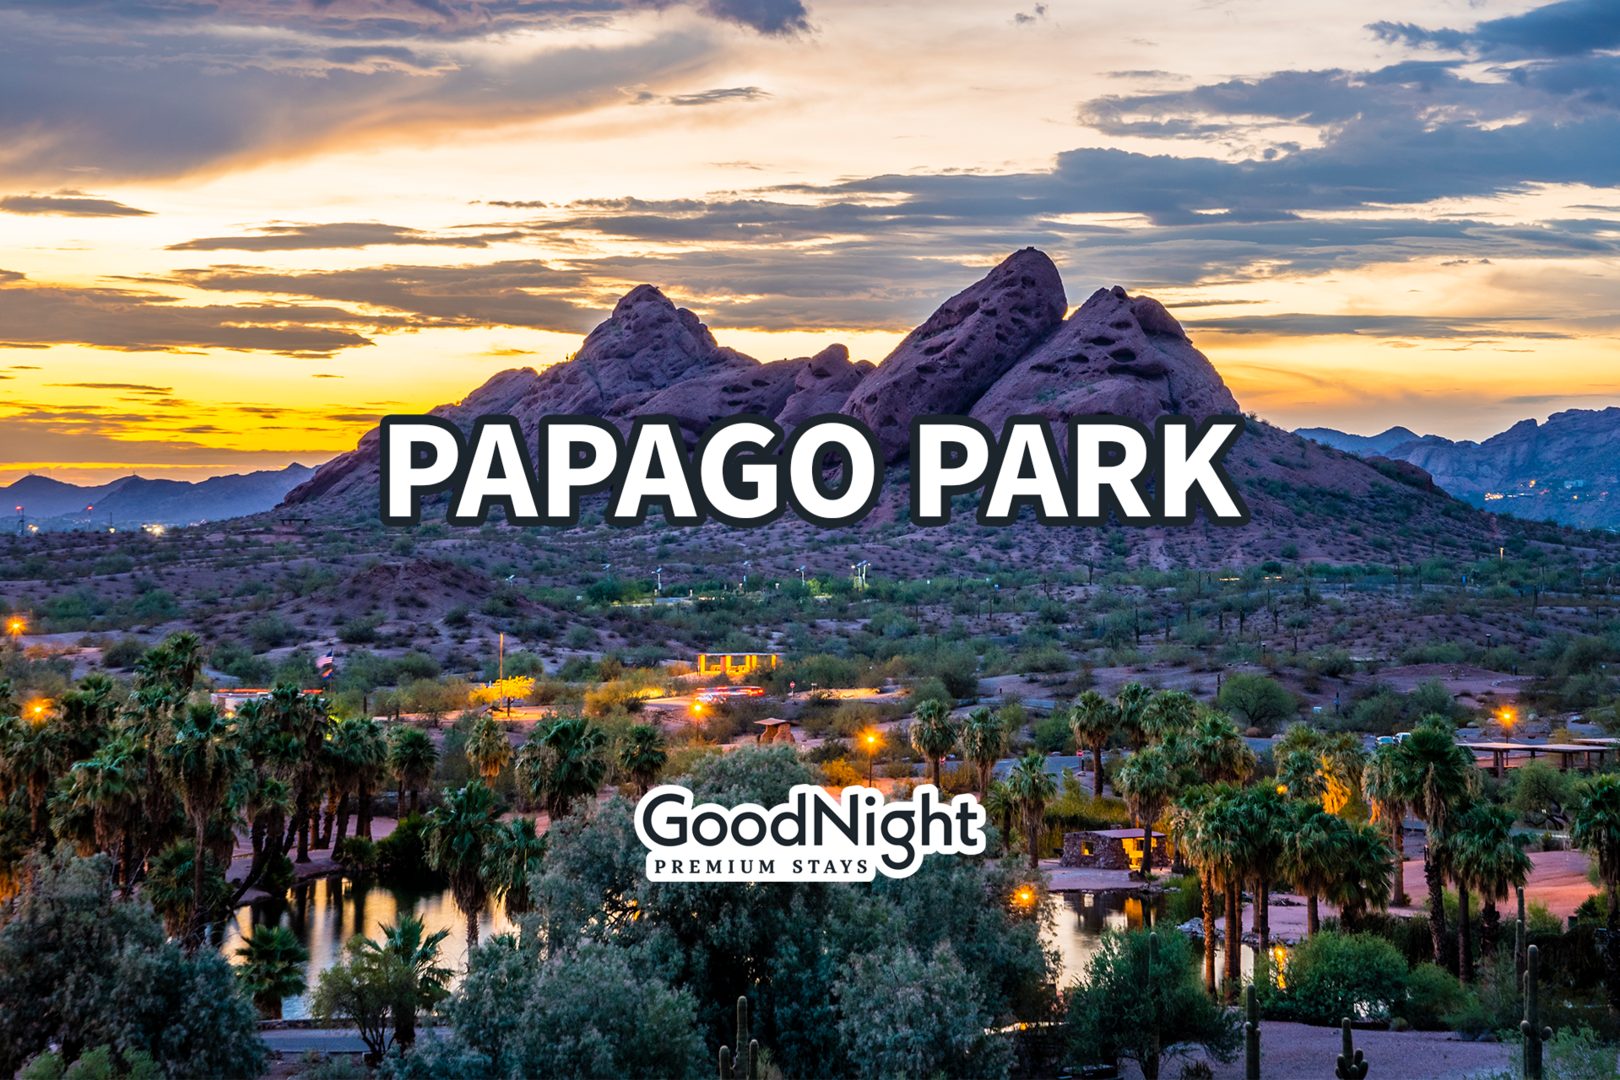 Papago Park: 13 13 mins: Papago Park